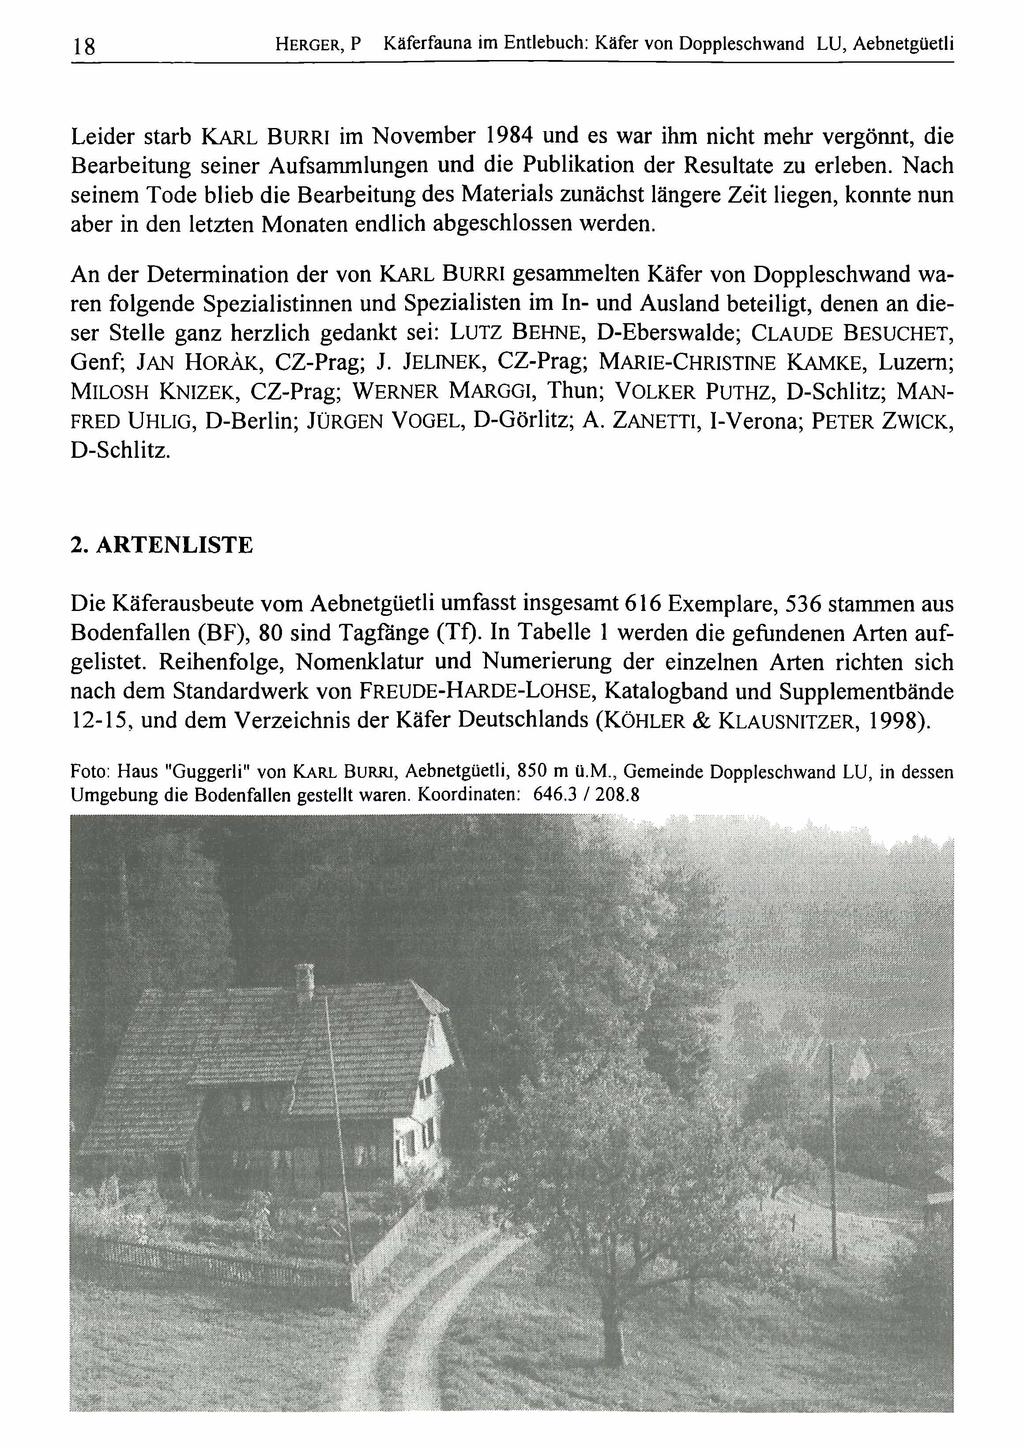 18 Natur-Museum Entomologischeim Gesellschaft Luzern; download H e r gluzern e r, Pund Käferfauna Entlebuch: Käfer vonwww.biologiezentrum.